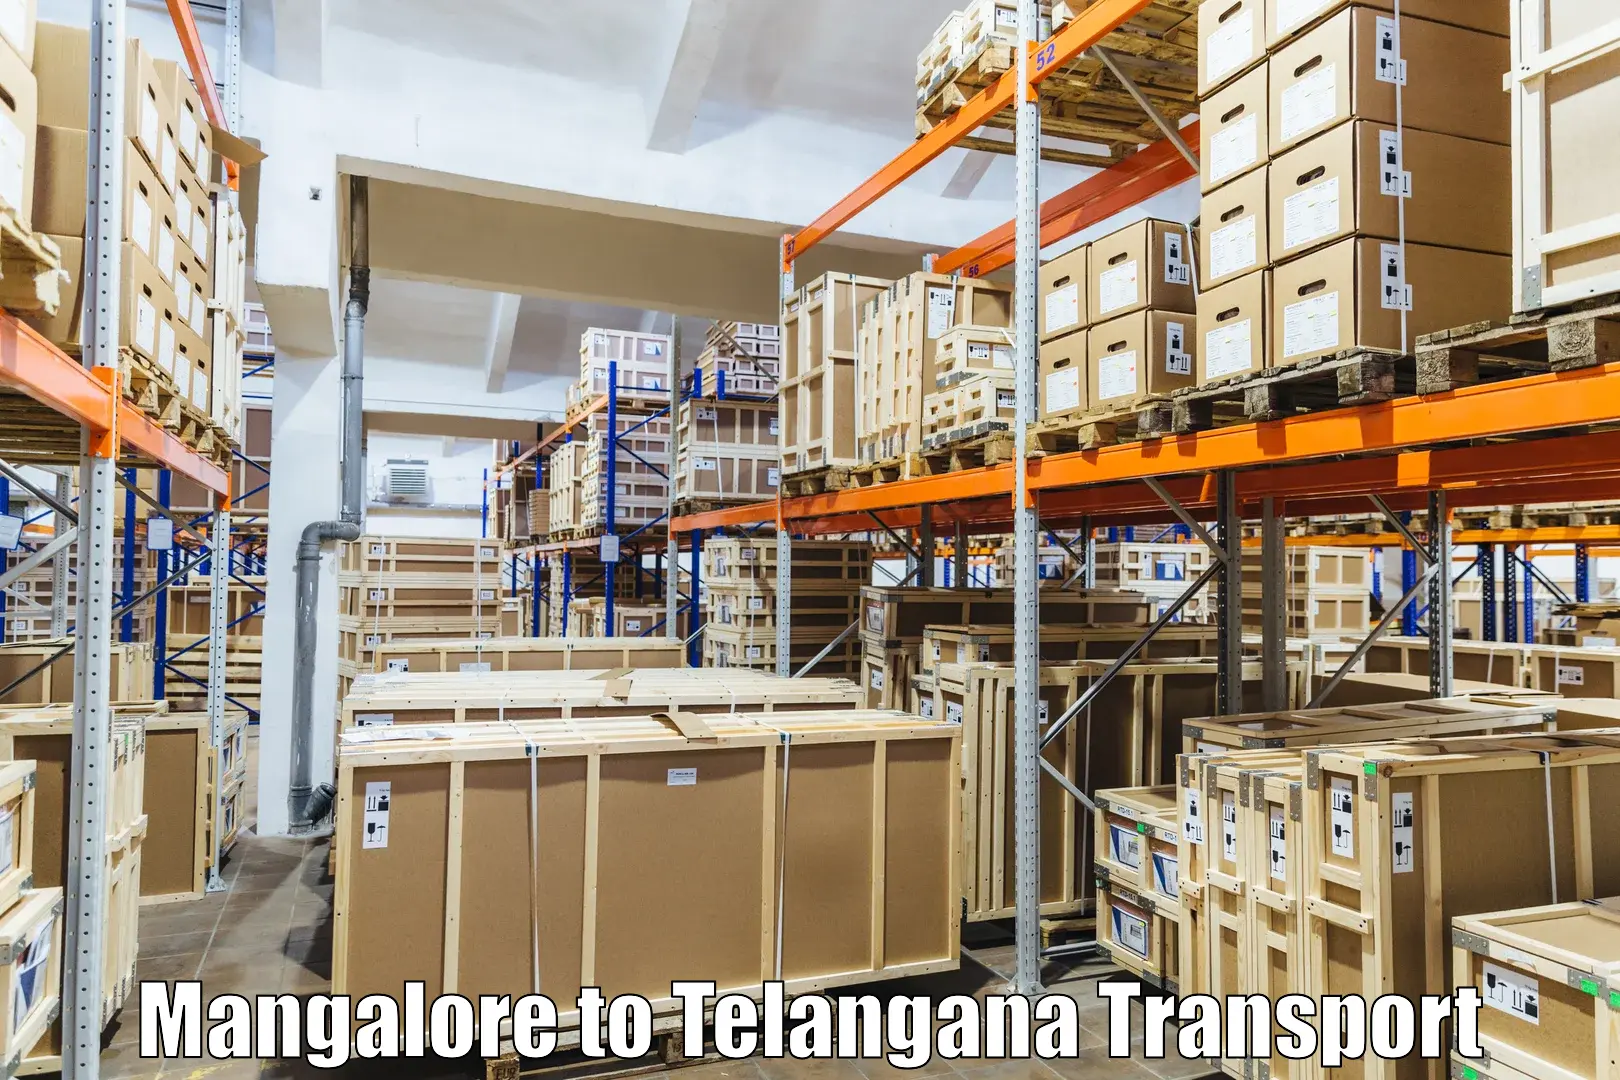 Online transport service Mangalore to Mahabubabad